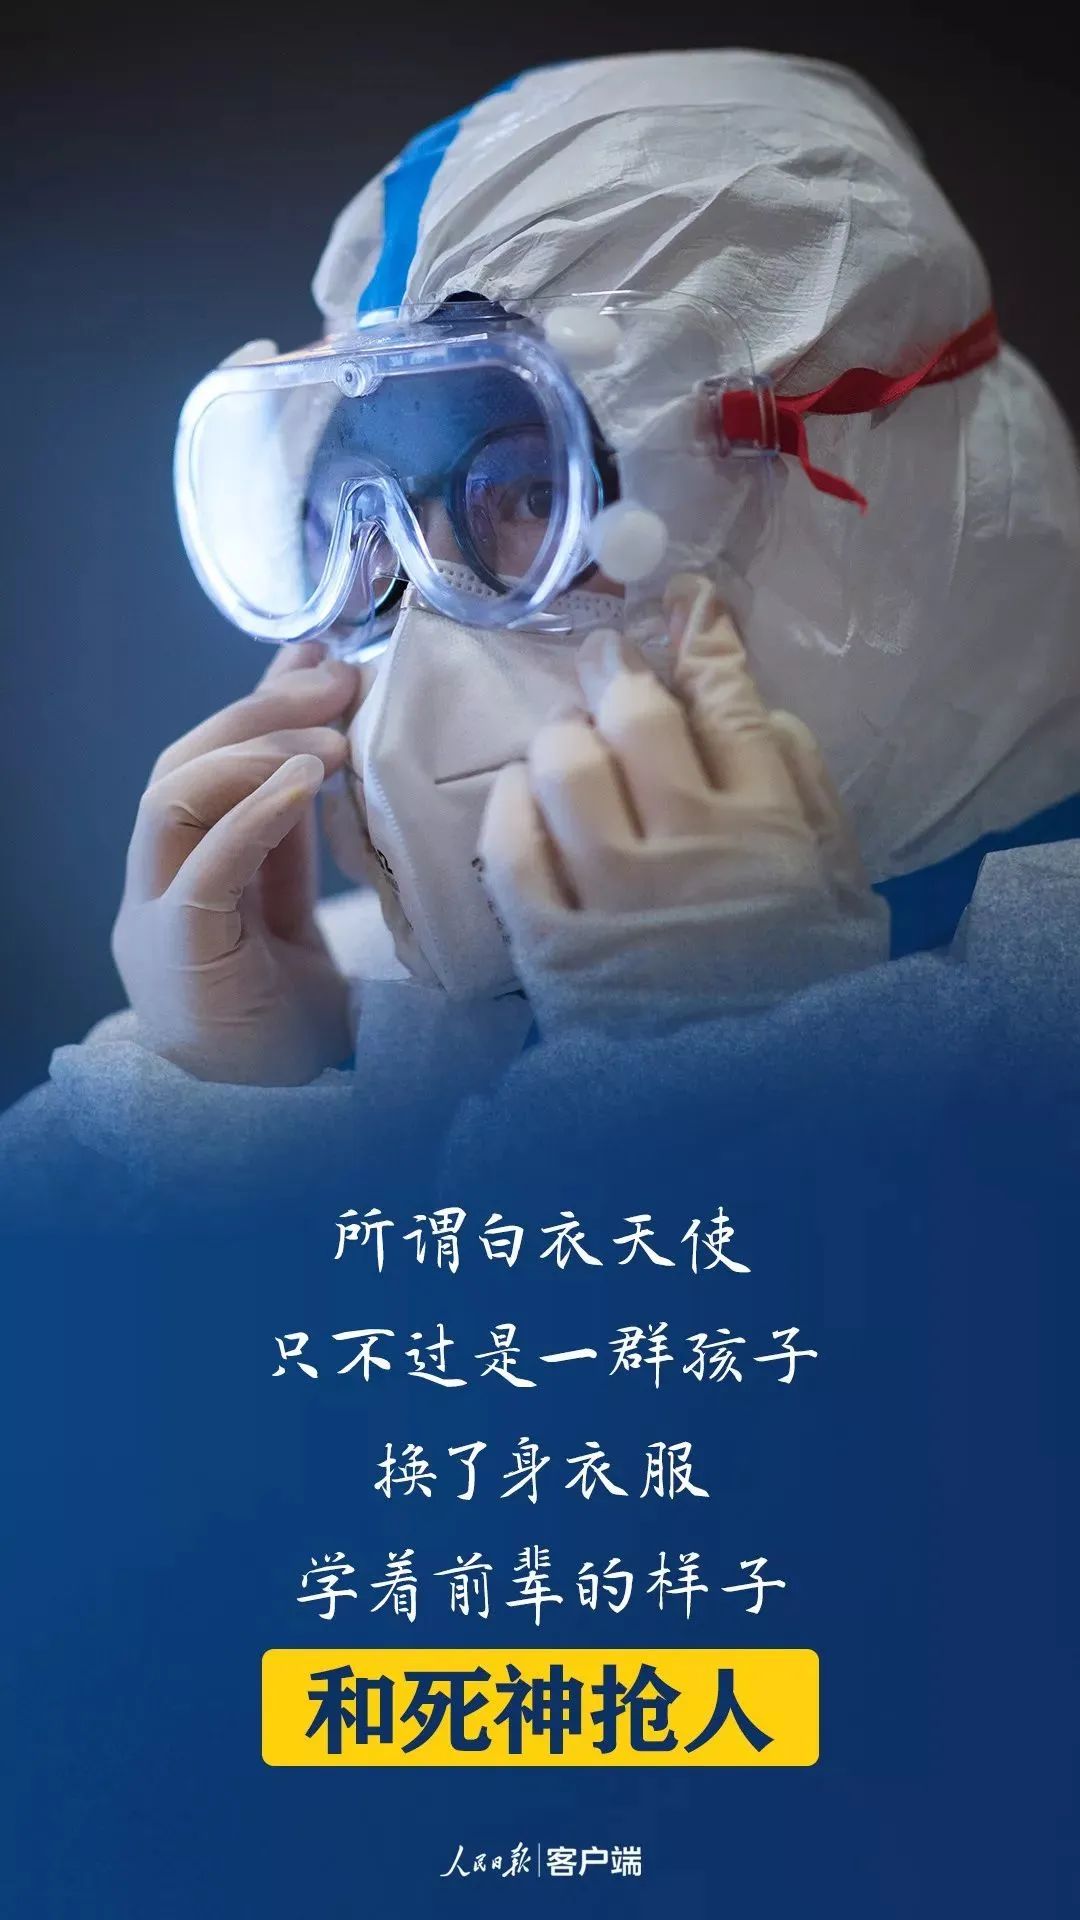 淄博市第七人民医院:医护心声 疫情与温暖